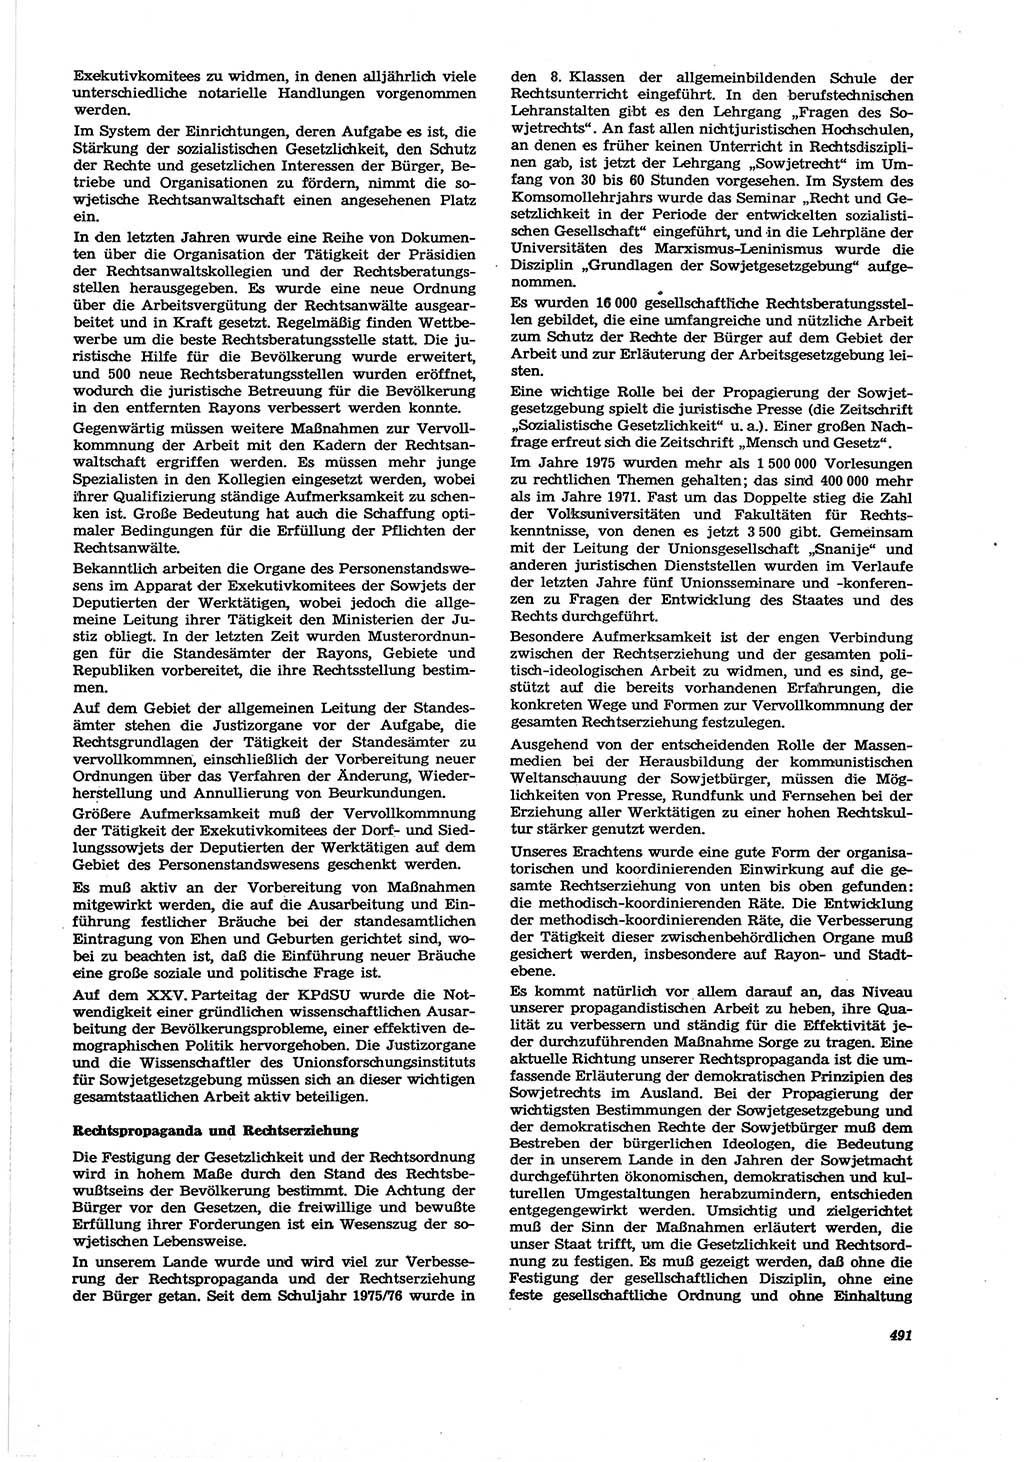 Neue Justiz (NJ), Zeitschrift für Recht und Rechtswissenschaft [Deutsche Demokratische Republik (DDR)], 30. Jahrgang 1976, Seite 491 (NJ DDR 1976, S. 491)